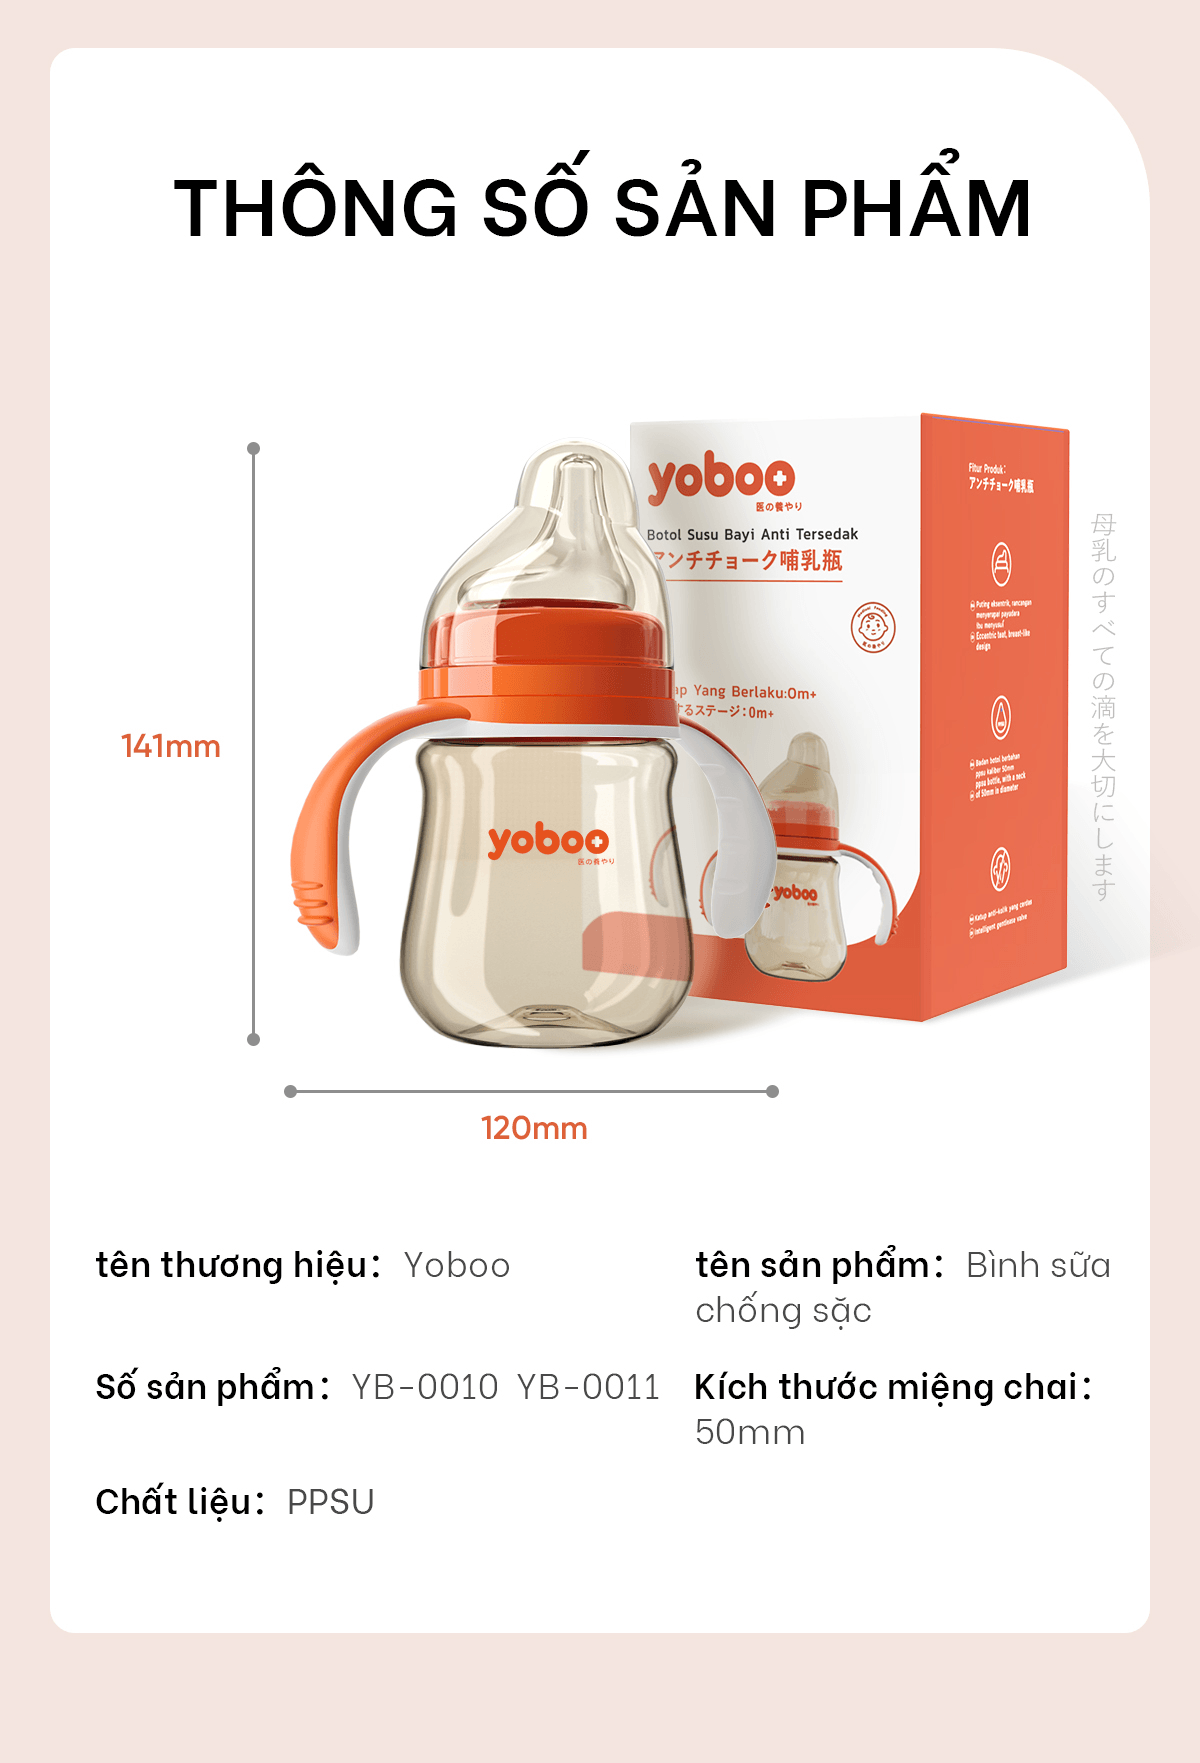 bình sữa cho bé yoboo 160ml 240ml nhựa ppsu an toàn chống sặc chất lượng 11